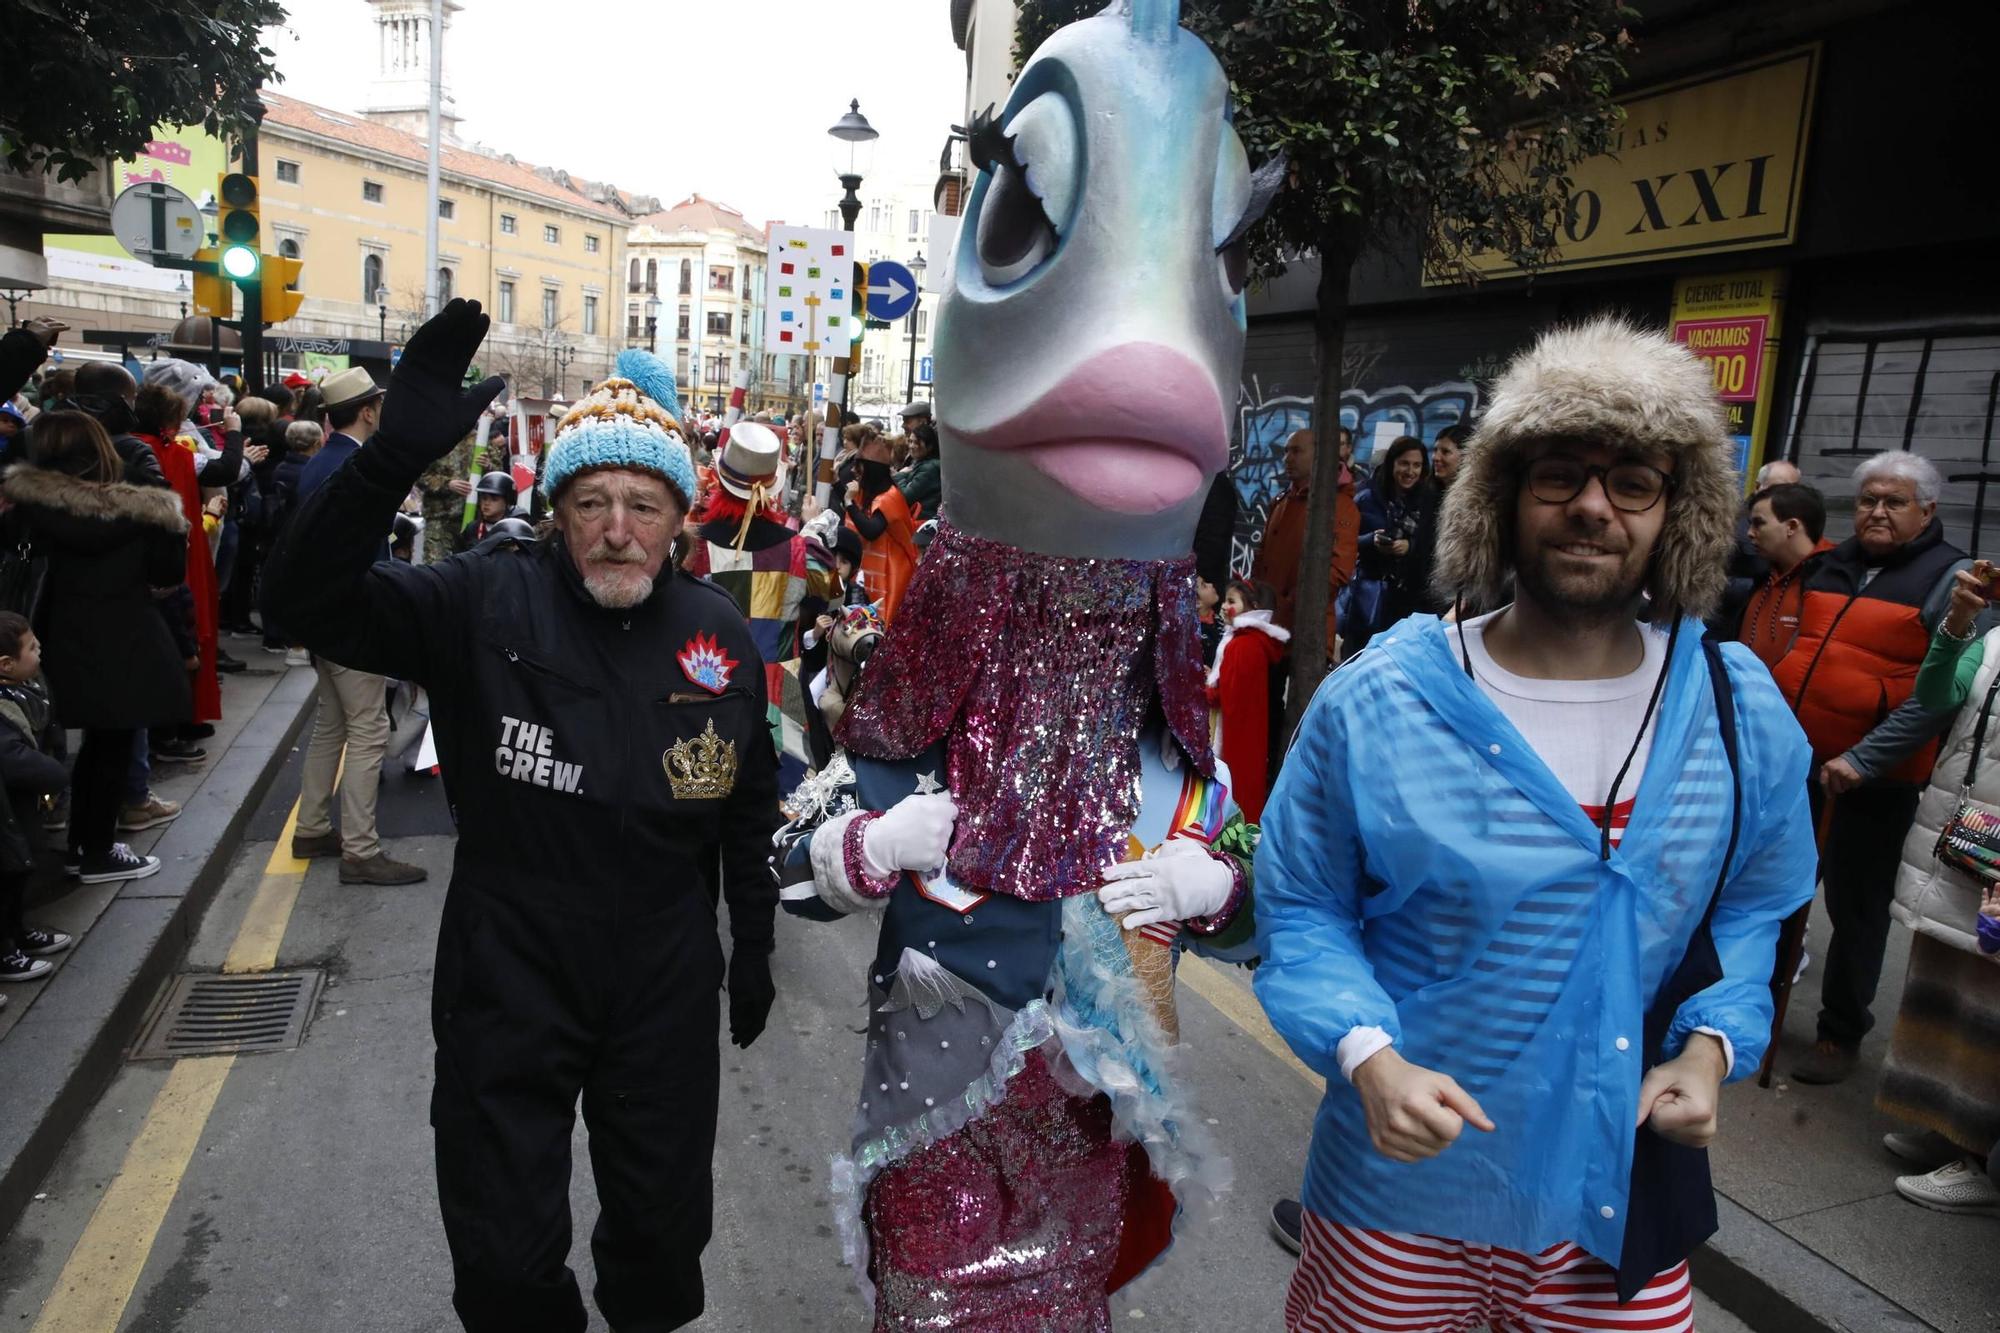 Así han disfrutado pequeños y mayores en el desfile infantil del Antroxu de Gijón (en imágenes)